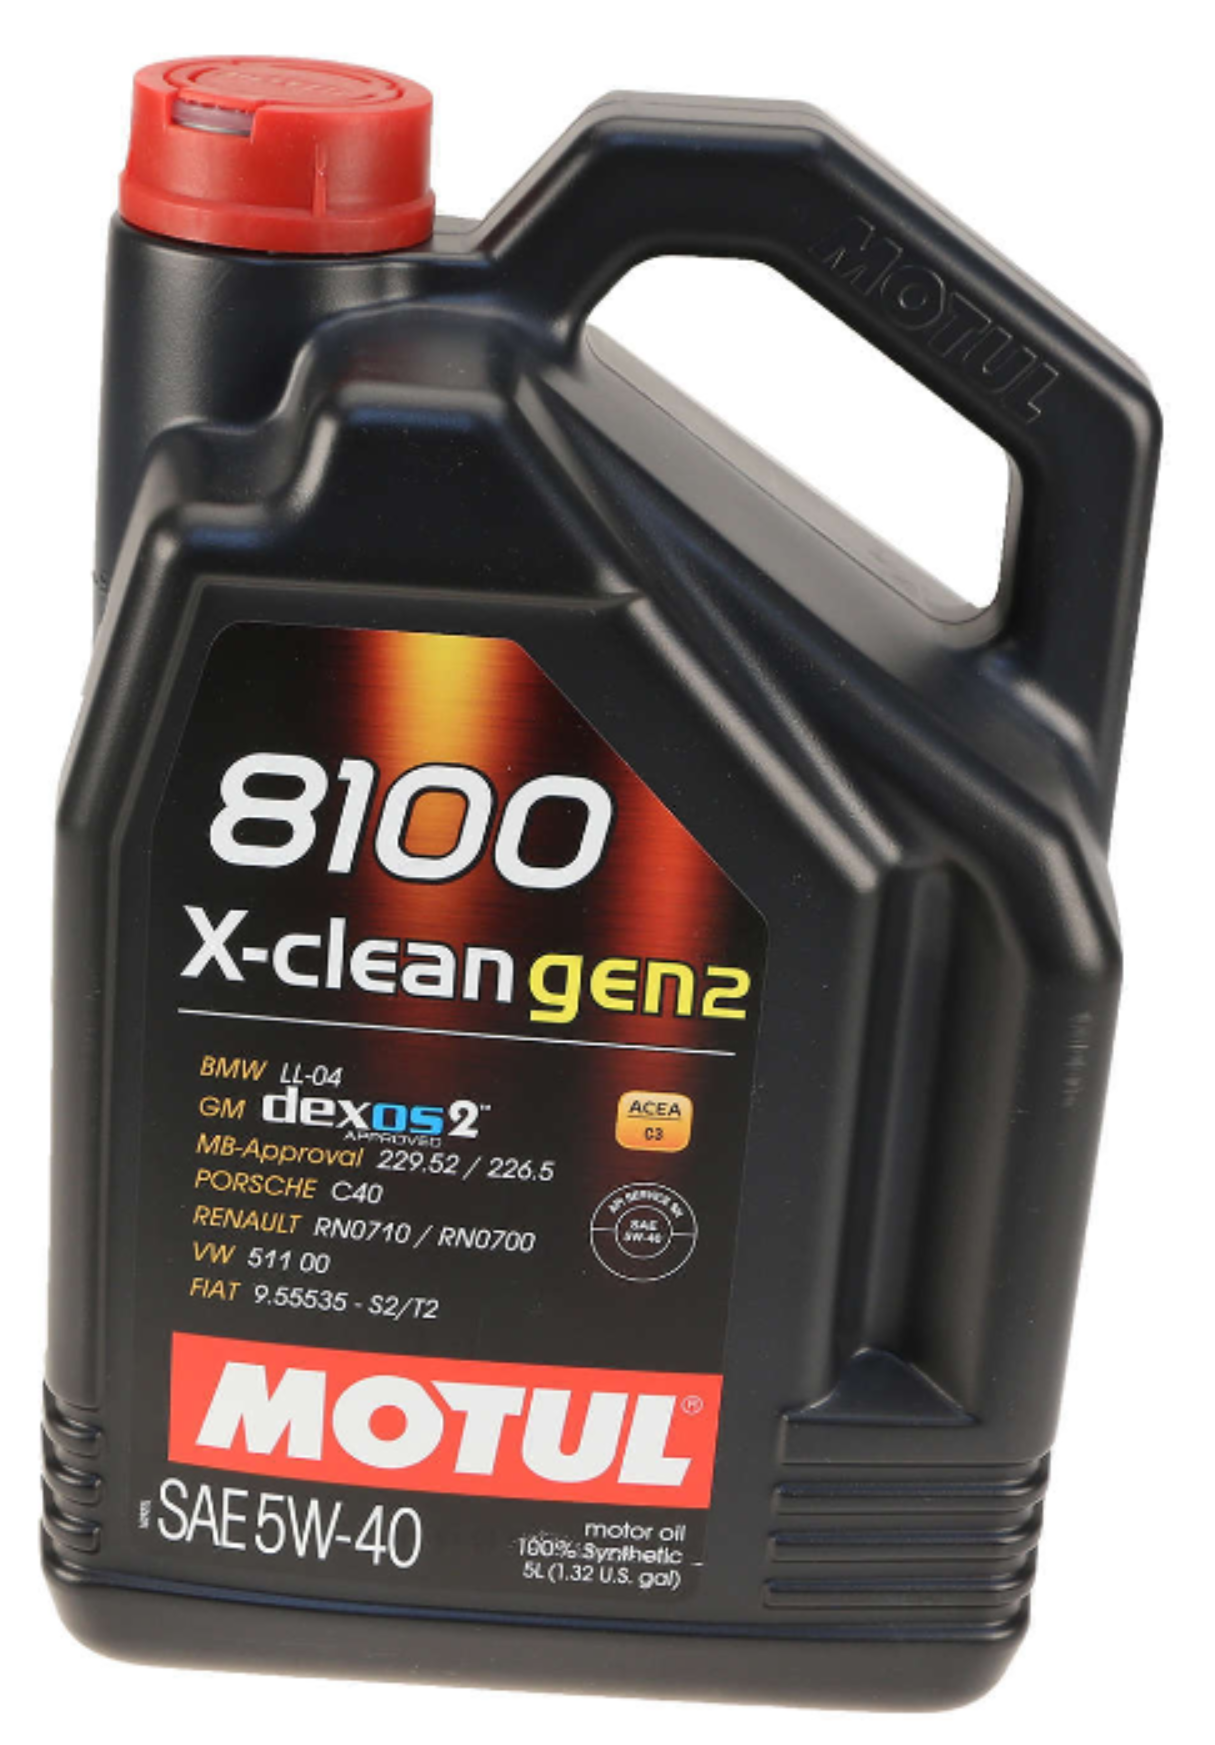 Motul Engine Oil 5W40 - Motul 109762 5-Liter - 8100 X-clean (Gen 2) - 5W-40 Synthetic